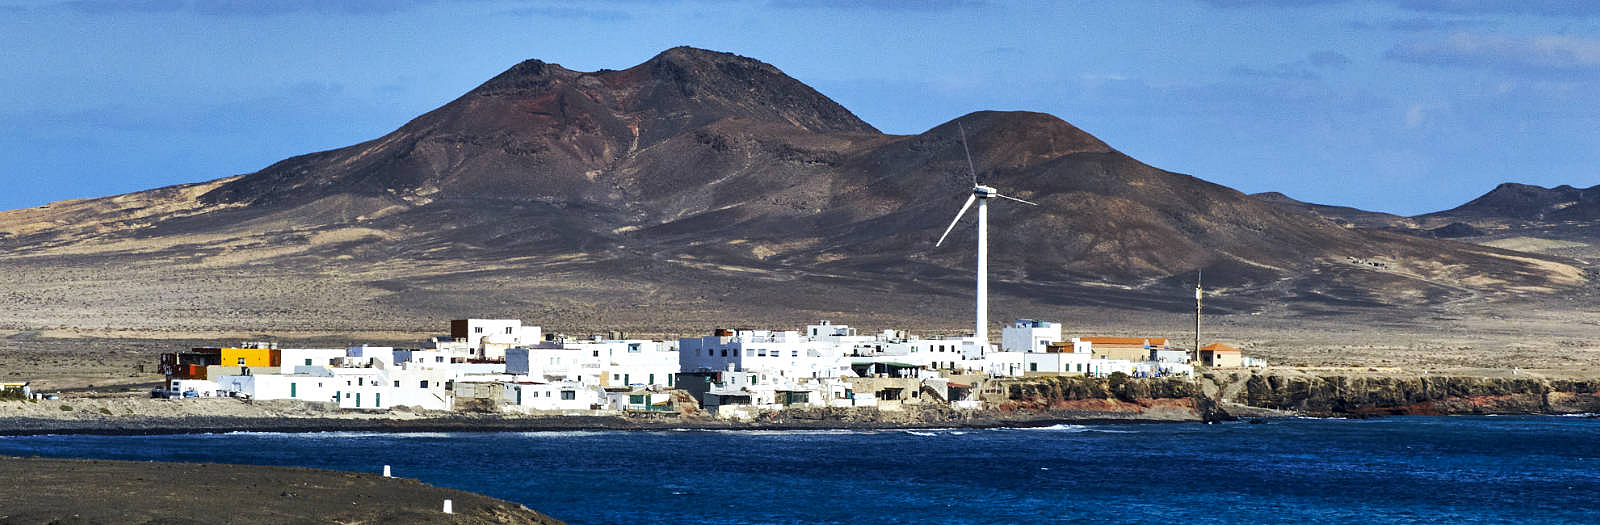 Puerto del la Cruz Jandía Fuerteventura.